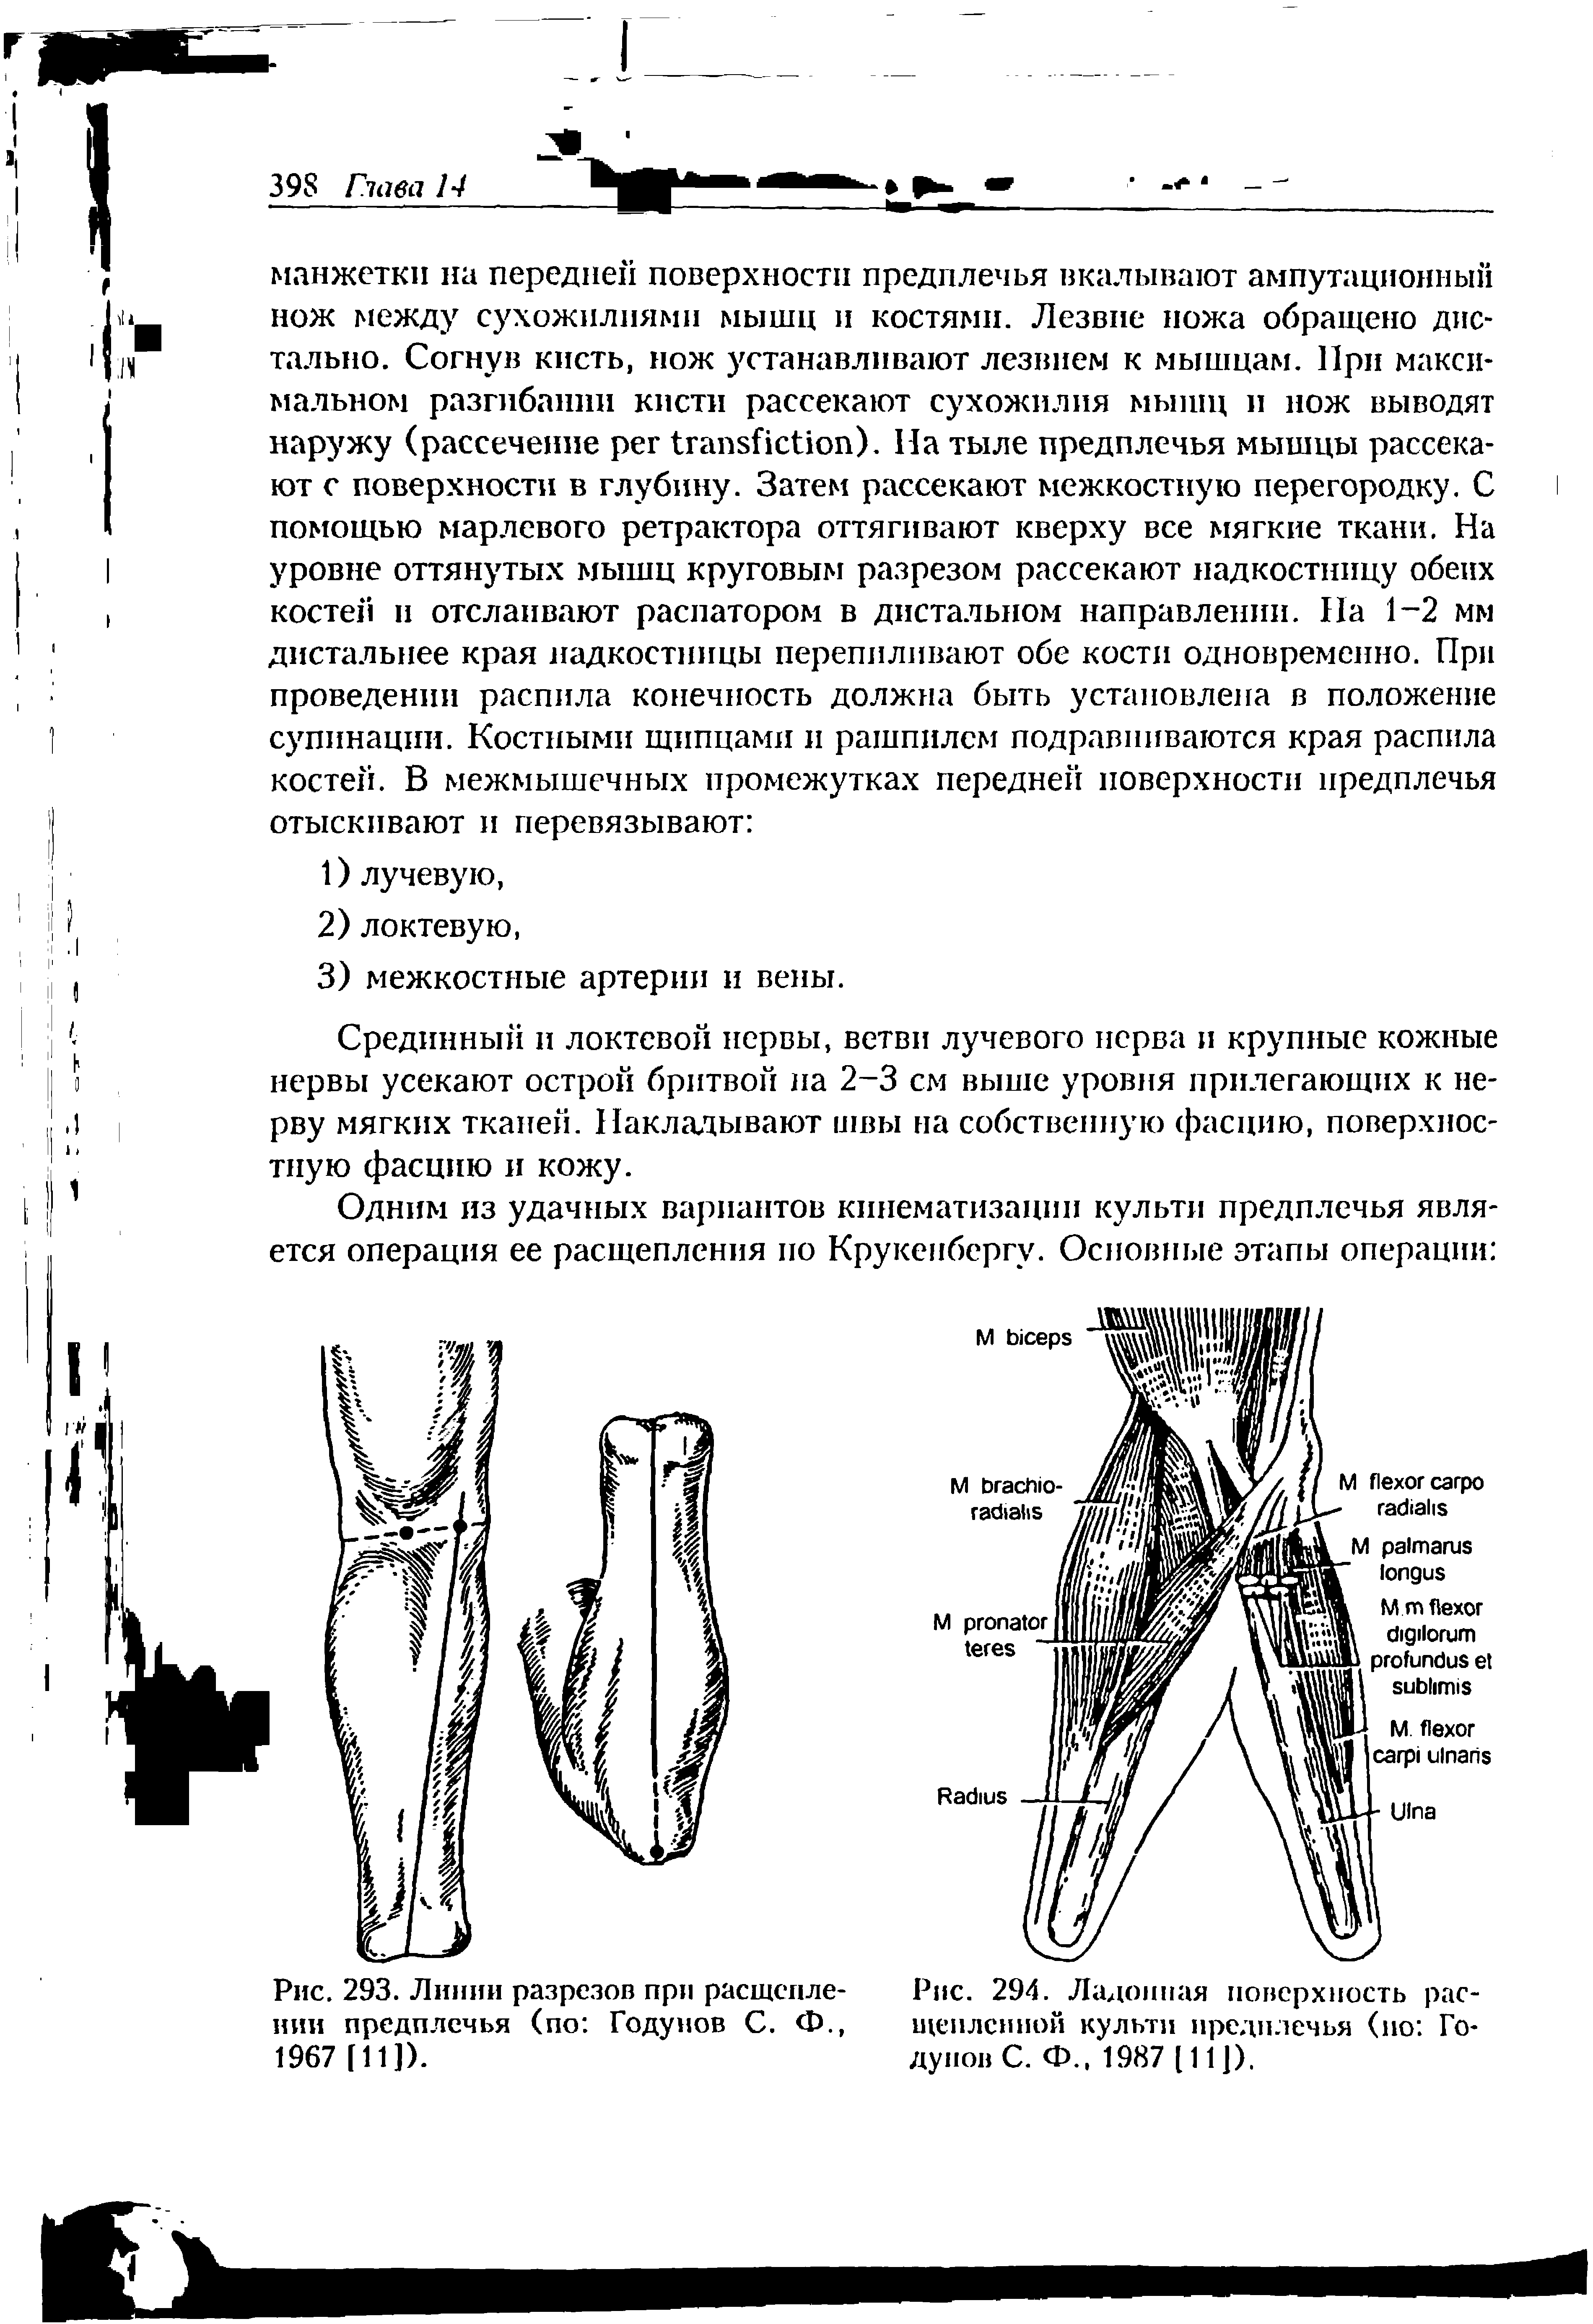 Рис. 294. Ладонная поверхность расщепленной культи предплечья (но Годунов С. Ф., 1987 [11]).